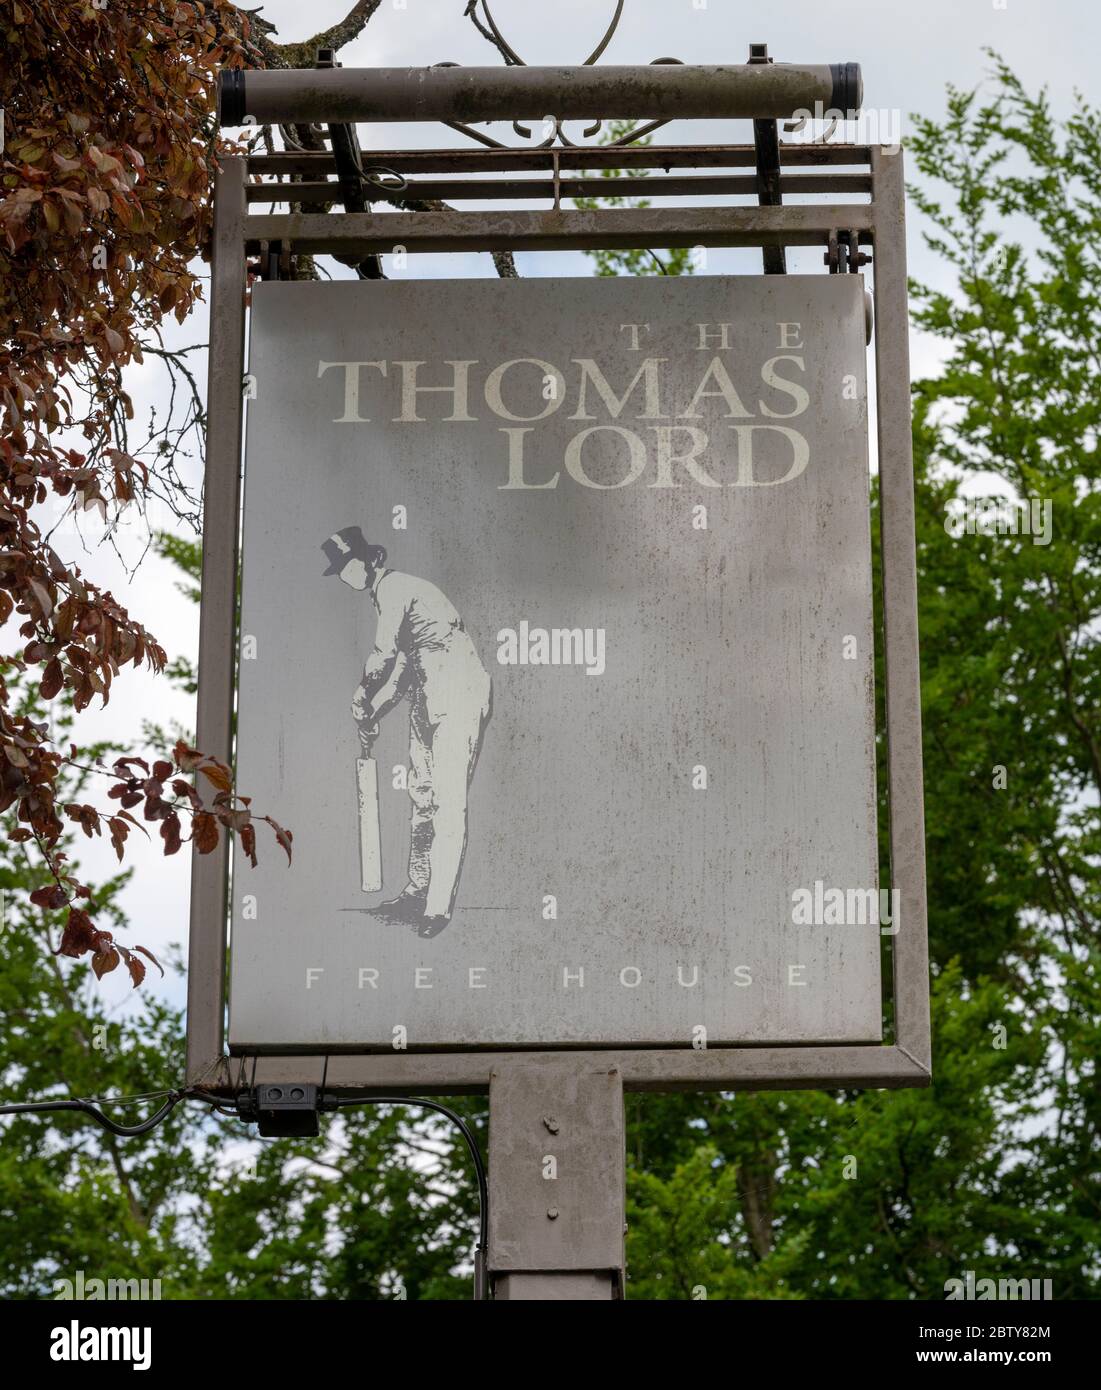 Panneau de pub suspendu traditionnel à la maison publique Thomas Lord, West Mean, Hampshire, Angleterre, Royaume-Uni Banque D'Images